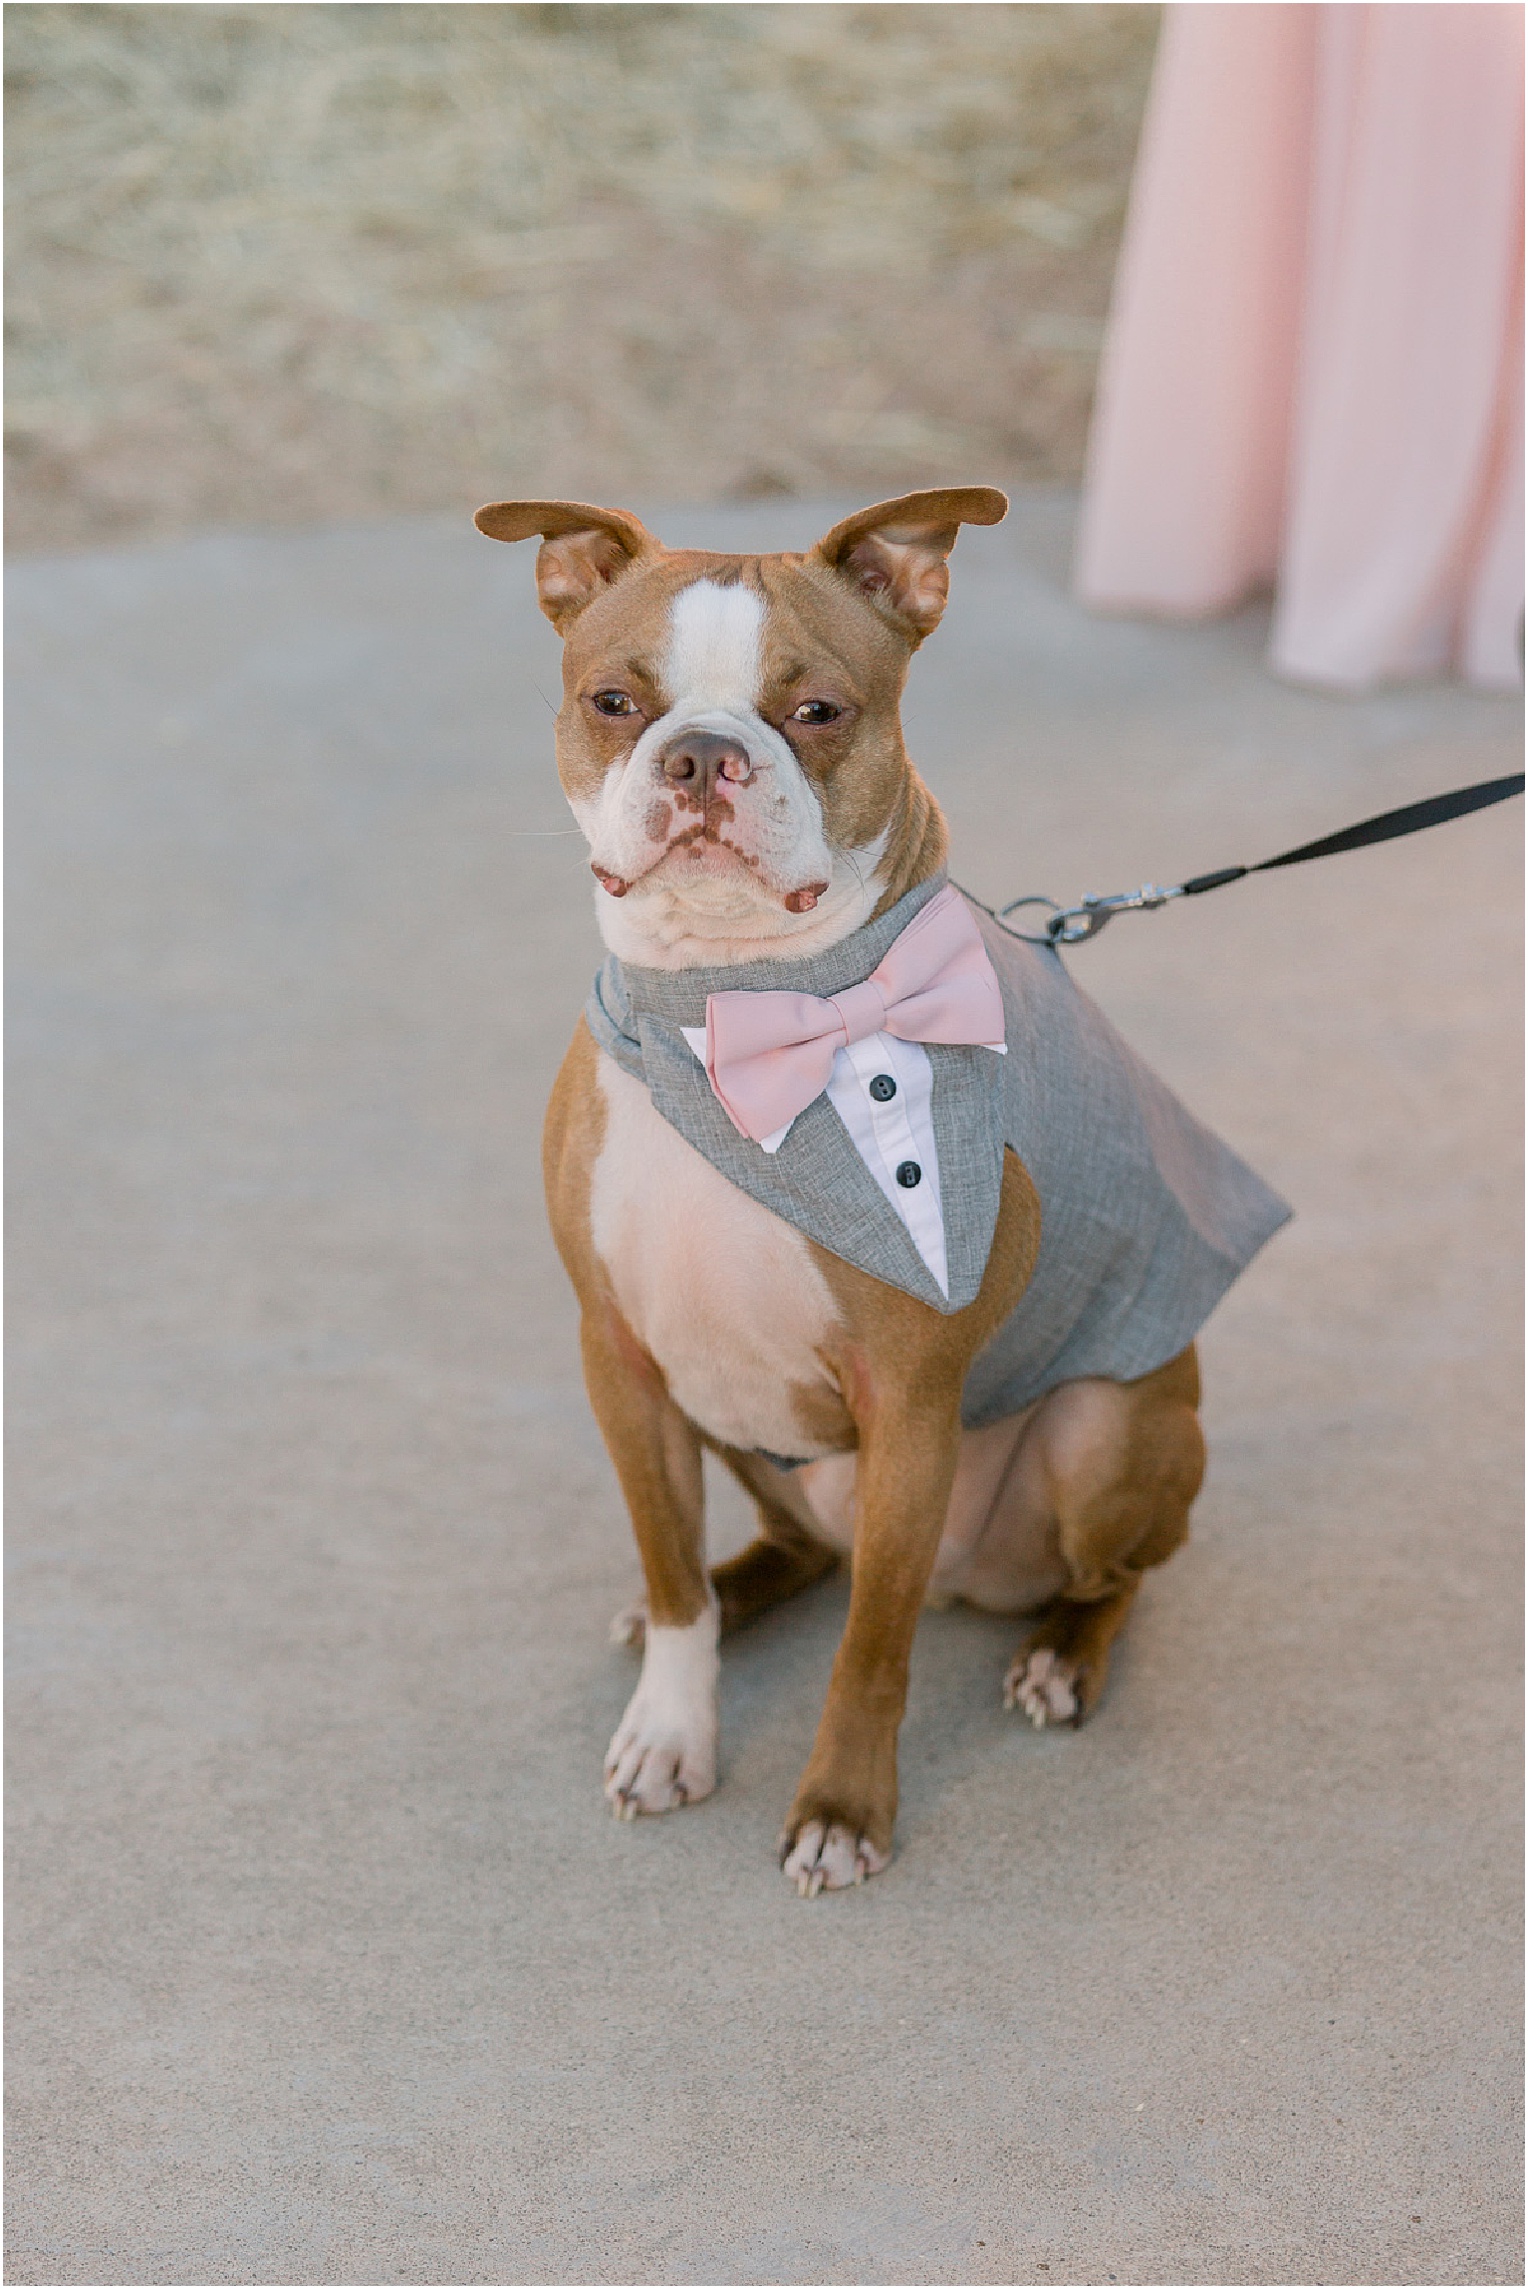 Annabelle + James Hilton El Conquistador Wedding dog at outdoor wedding ceremony